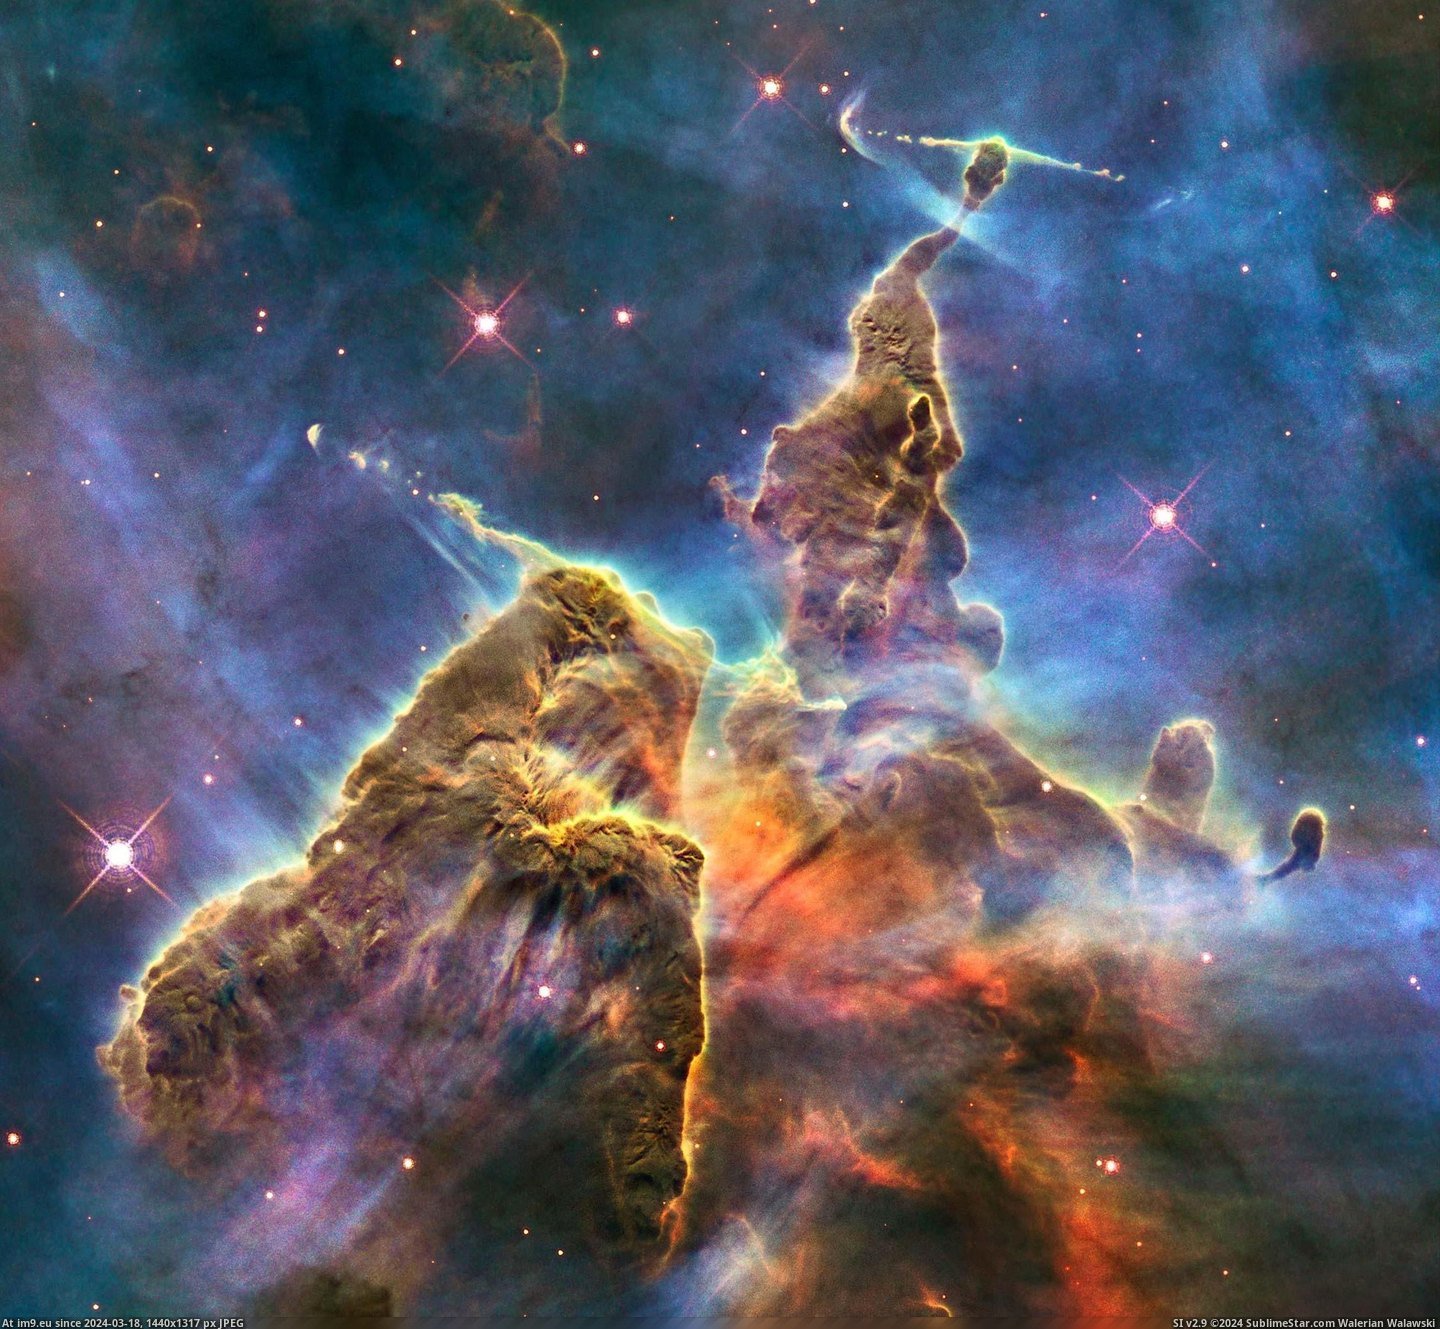 #Mountain #Captures #Mystic #Hubble [Pics] Hubble captures view of “Mystic Mountain” Pic. (Изображение из альбом My r/PICS favs))